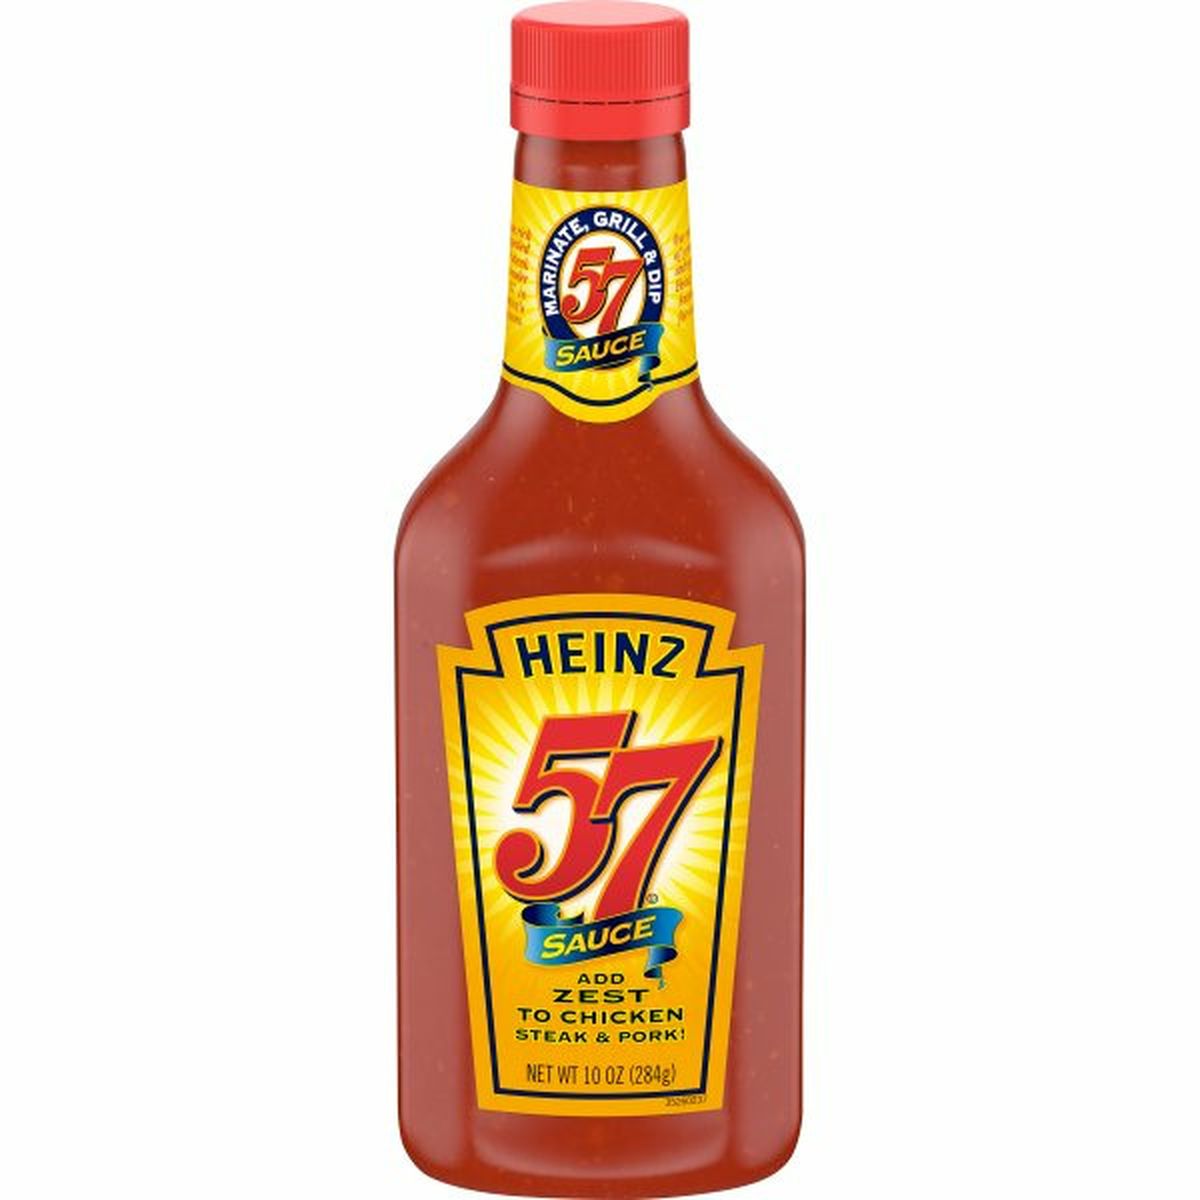 Calories in Heinz 57 Sauce